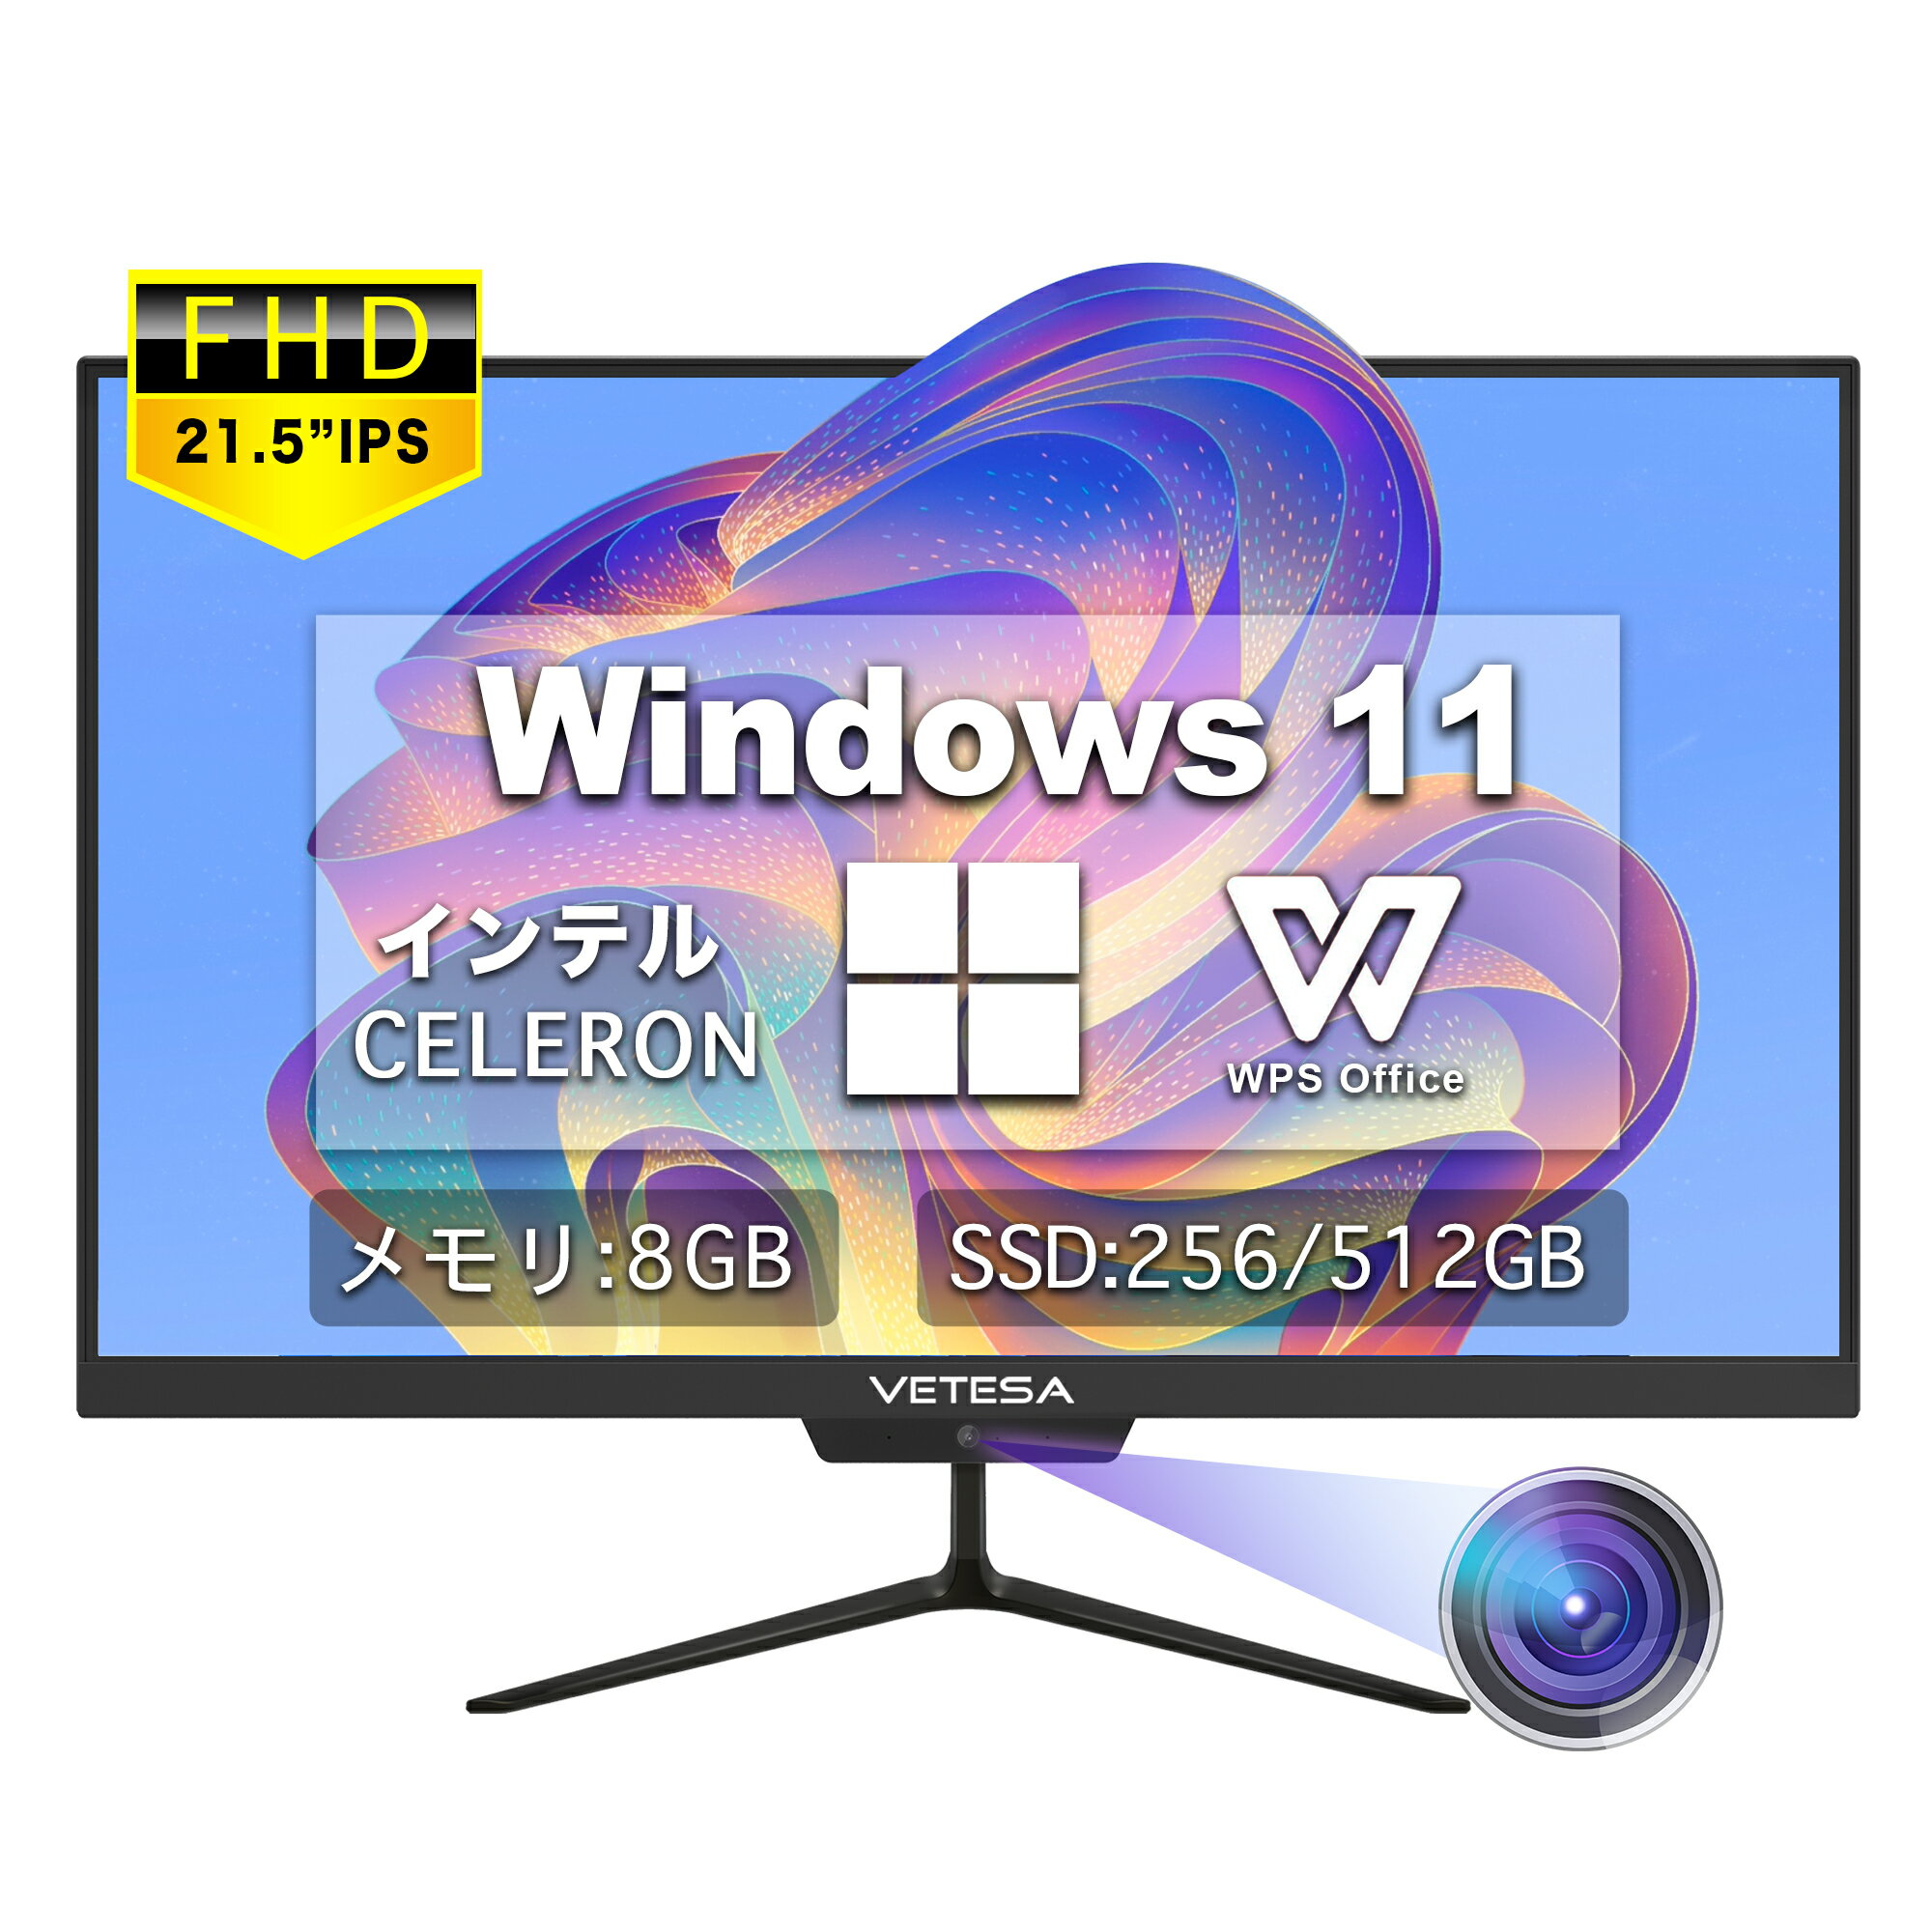 デスクトップパソコン 新品 Win11搭載 一体型 デスクトップパソコン パソコン デスクトップPC 21.5型フルHD新品液晶パソコン 初期設定済み 初心者向け【Windows11搭載】 インテルCeleron N /メ…